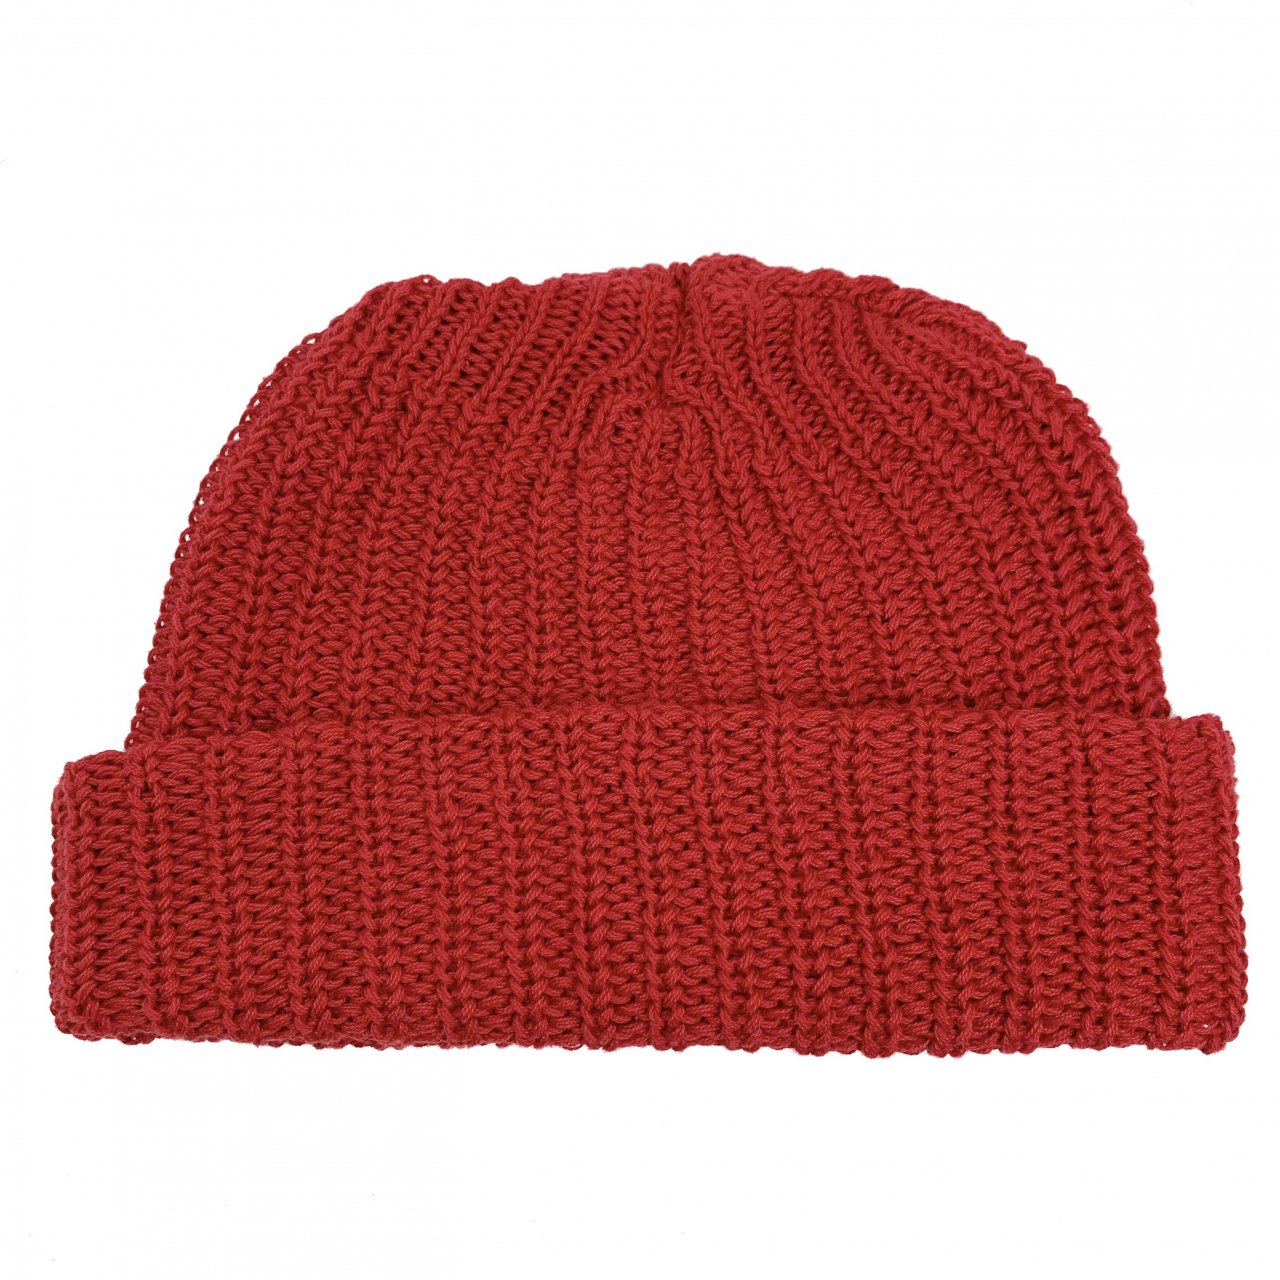 新品 USA製 COLUMBIA KNIT Cotton Short Knit Cap (RED) コロンビアニット コットンニットキャップ ニット帽  ショートタイプ 赤 レッド - NEWJOKE ONLINE STORE